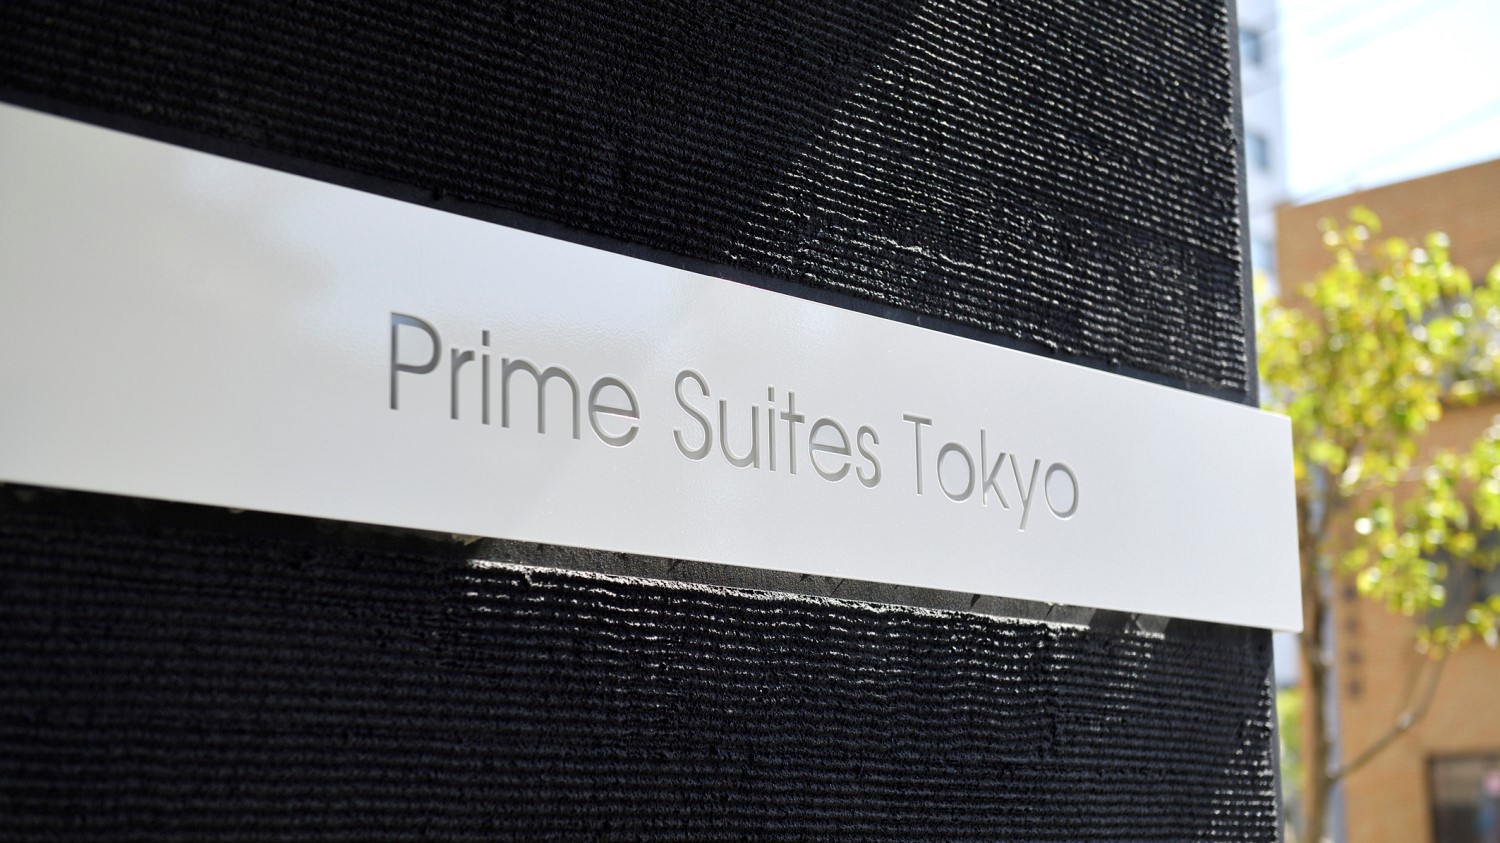 Prime Suites Tokyo